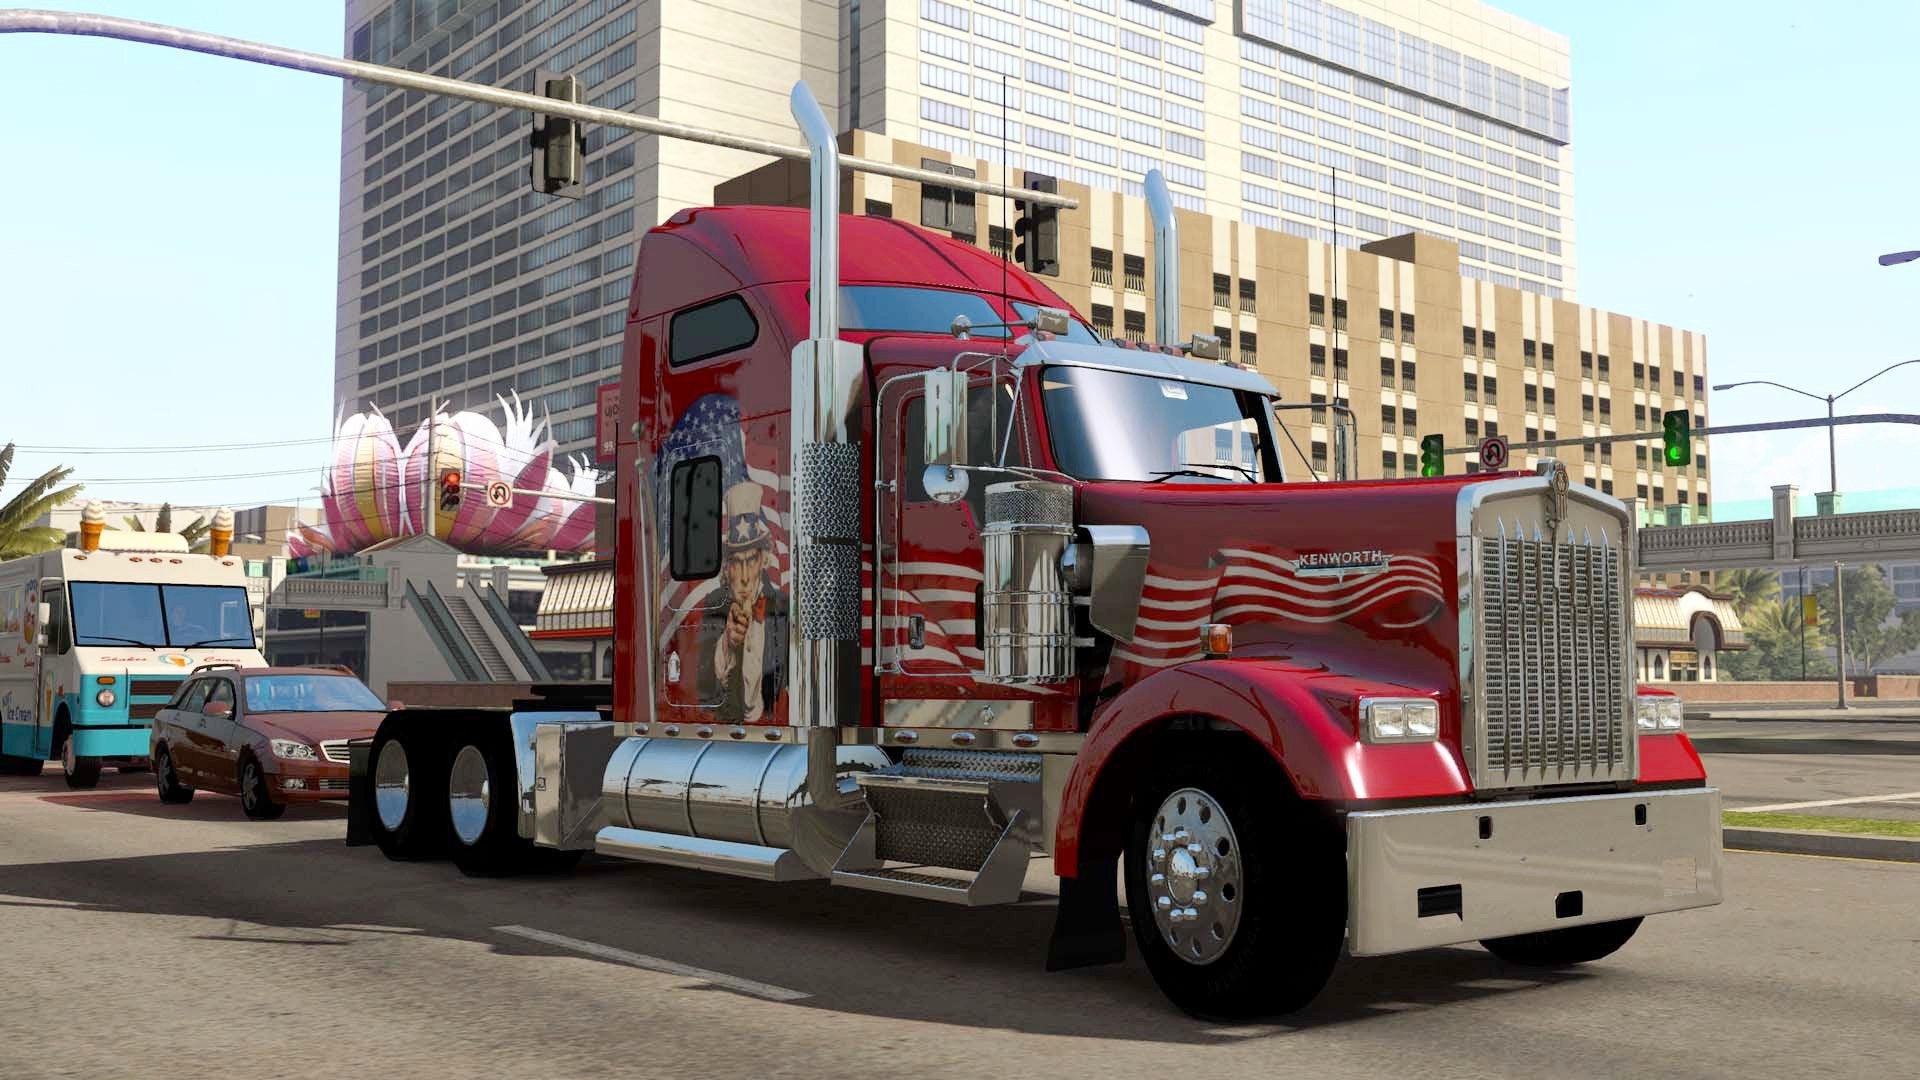 American Truck Simulator, Truck Driving Simulator Games